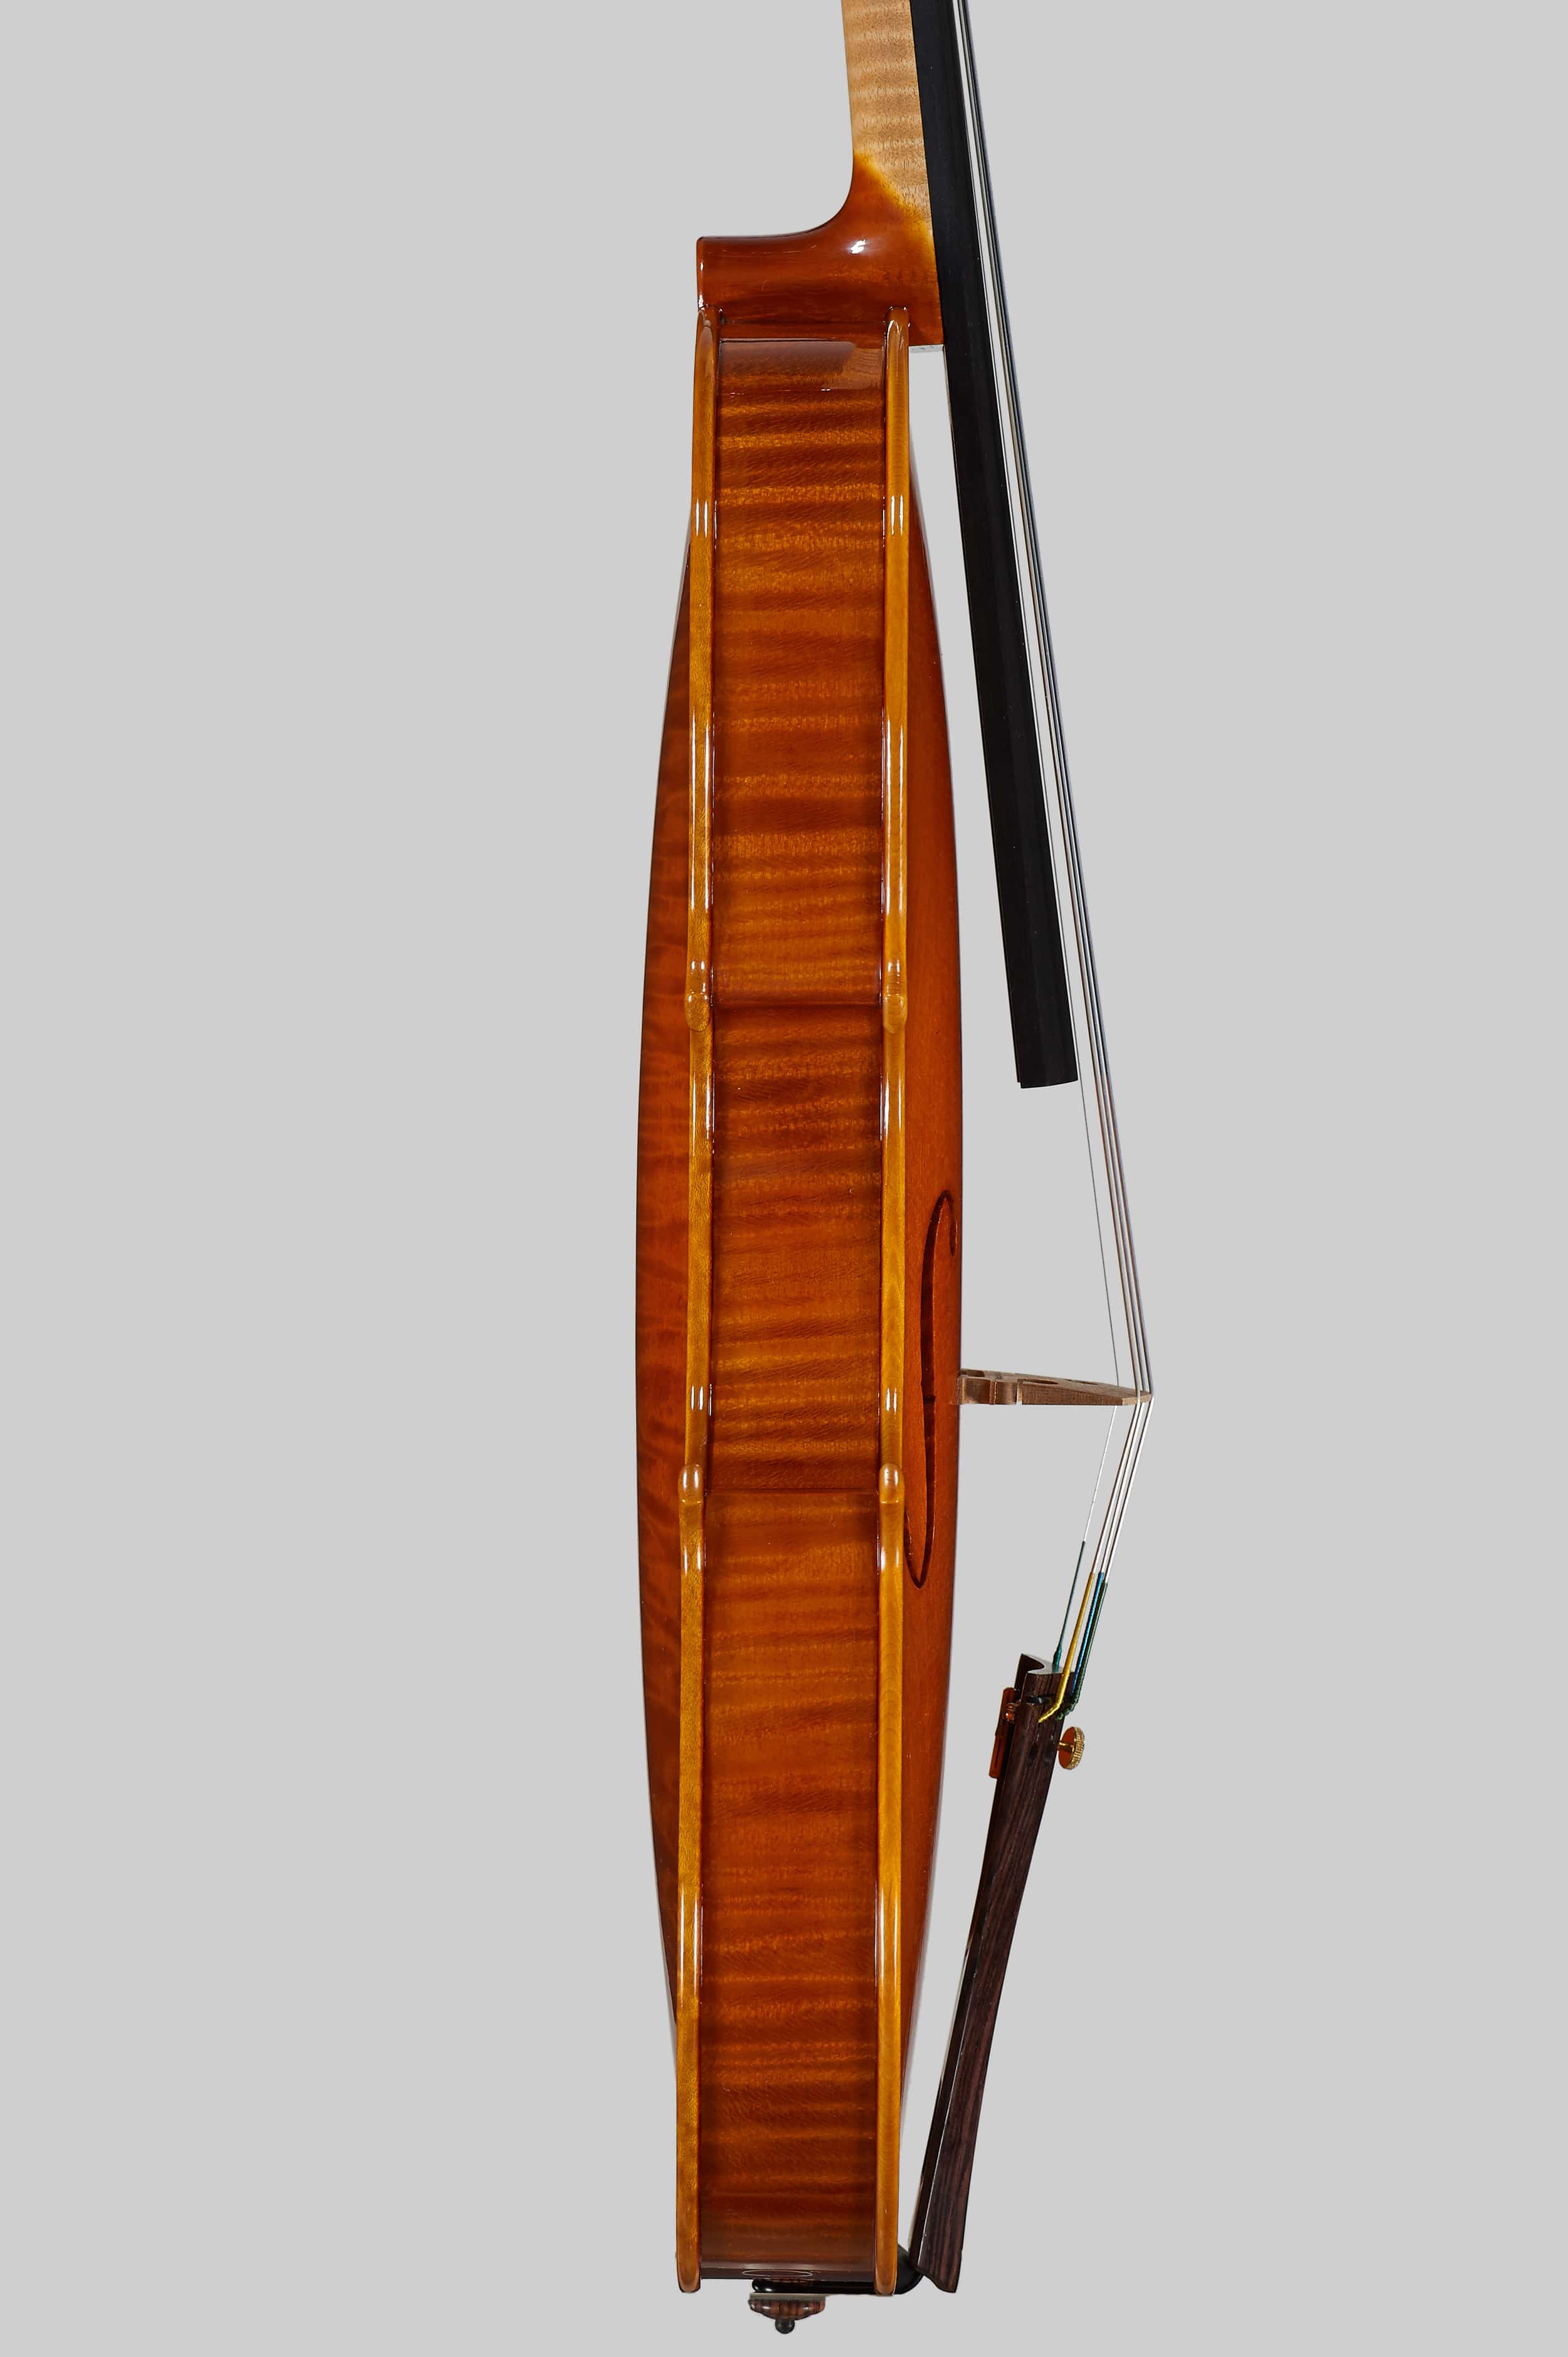 Anno 2015 – Violino modello stile A. Stradivari “Viotti” 1709 - Profilo